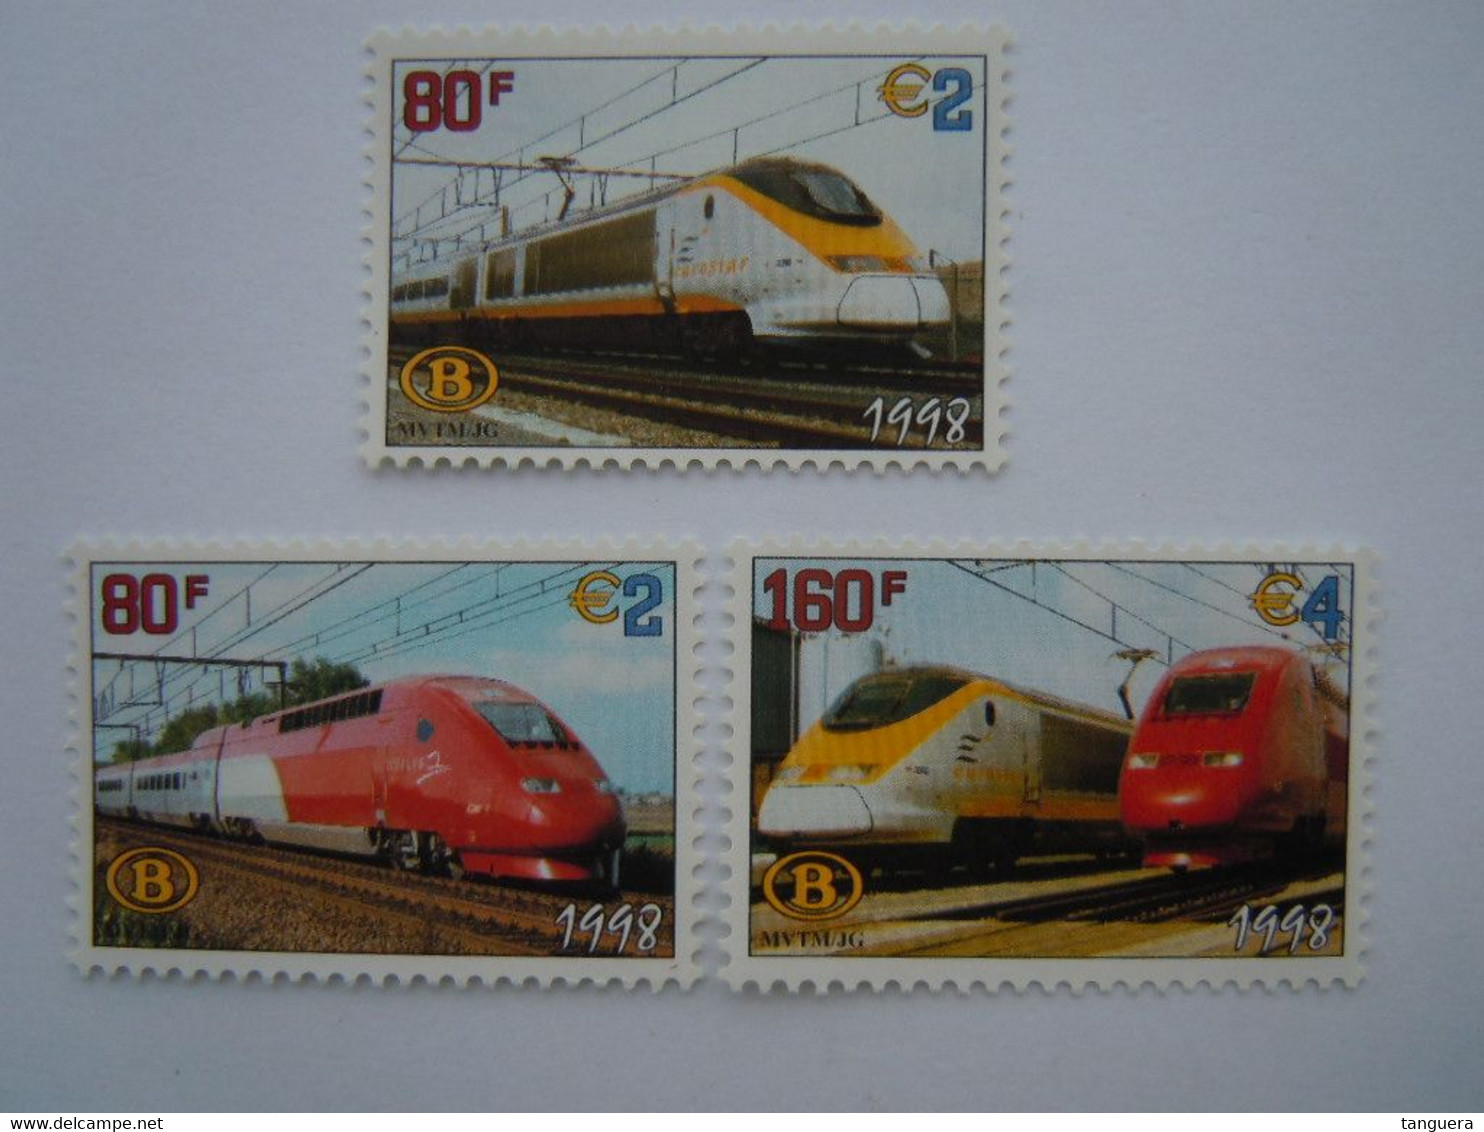 België Belgique 1998 Spoorwegvignet Vignette Chemins De Fer Eurostar Thalys Trein Train TRV6/8 MNH ** - 1996-2013 Vignette [TRV]